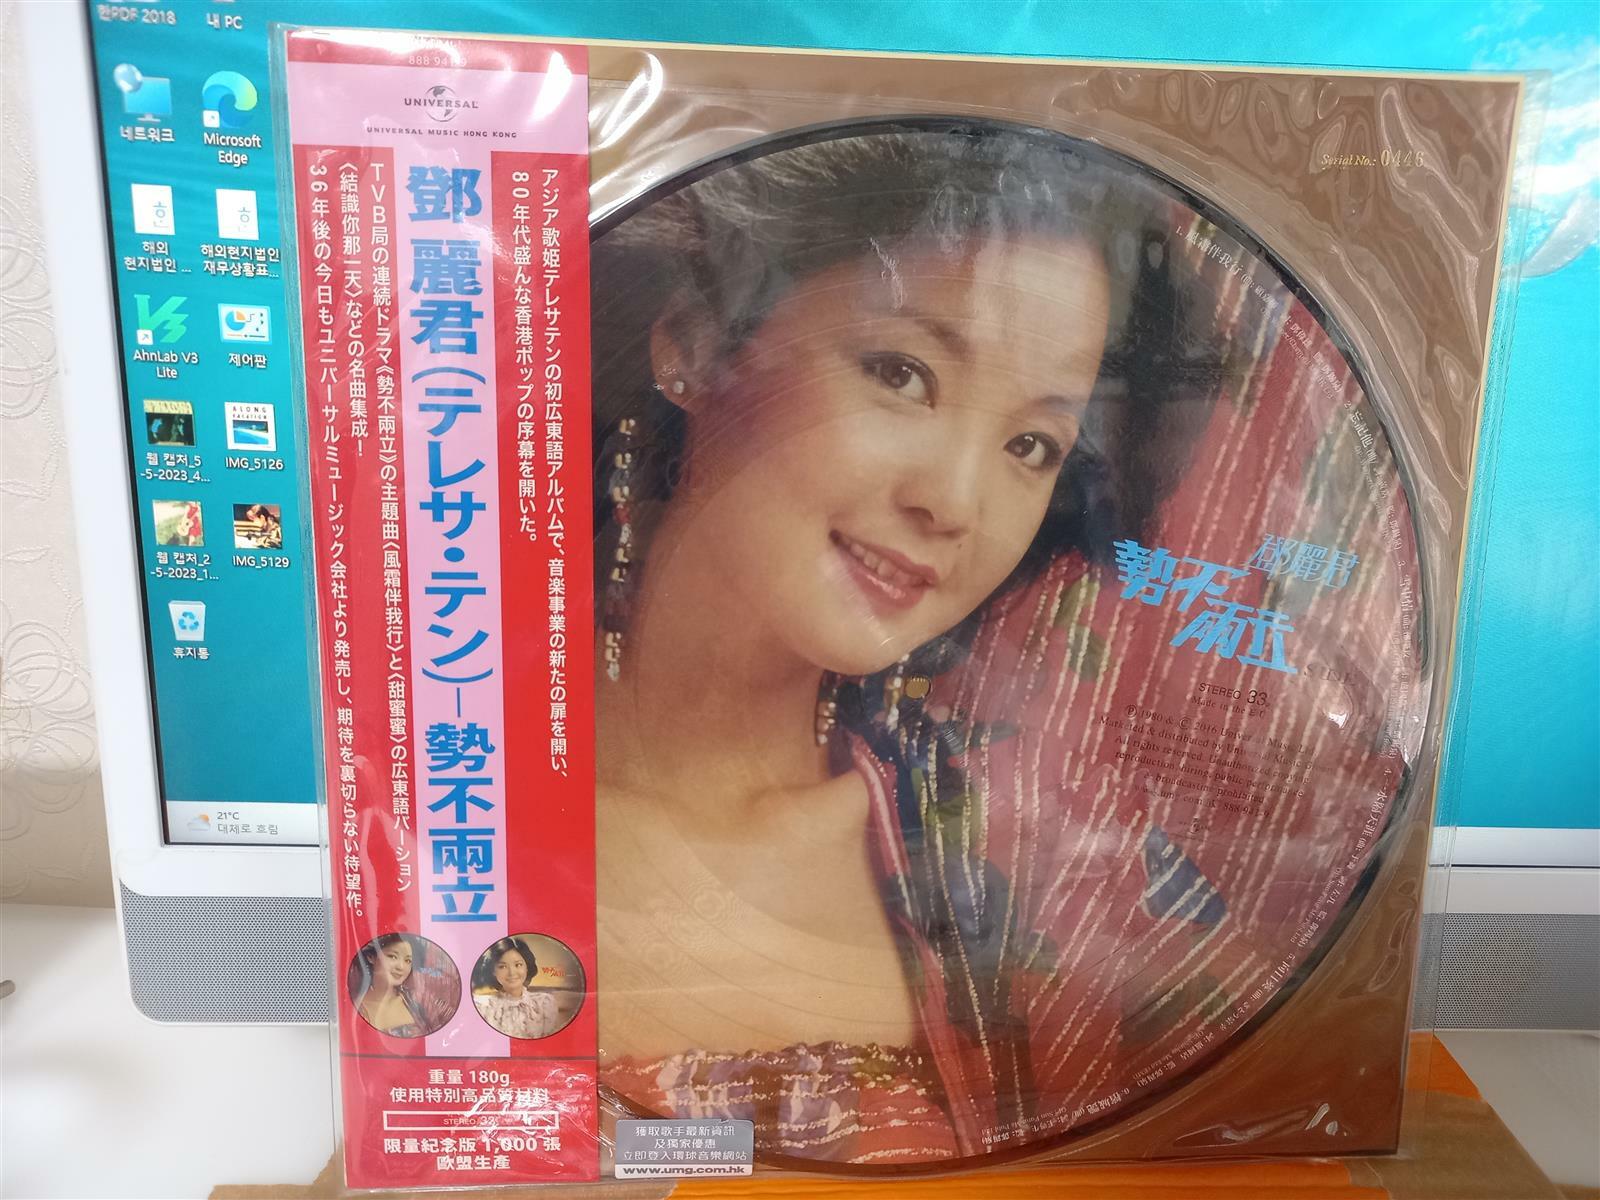 등려군 ^세불양립 (1980‘)^ 픽처디스크 LP...미개봉... Universal Music반...